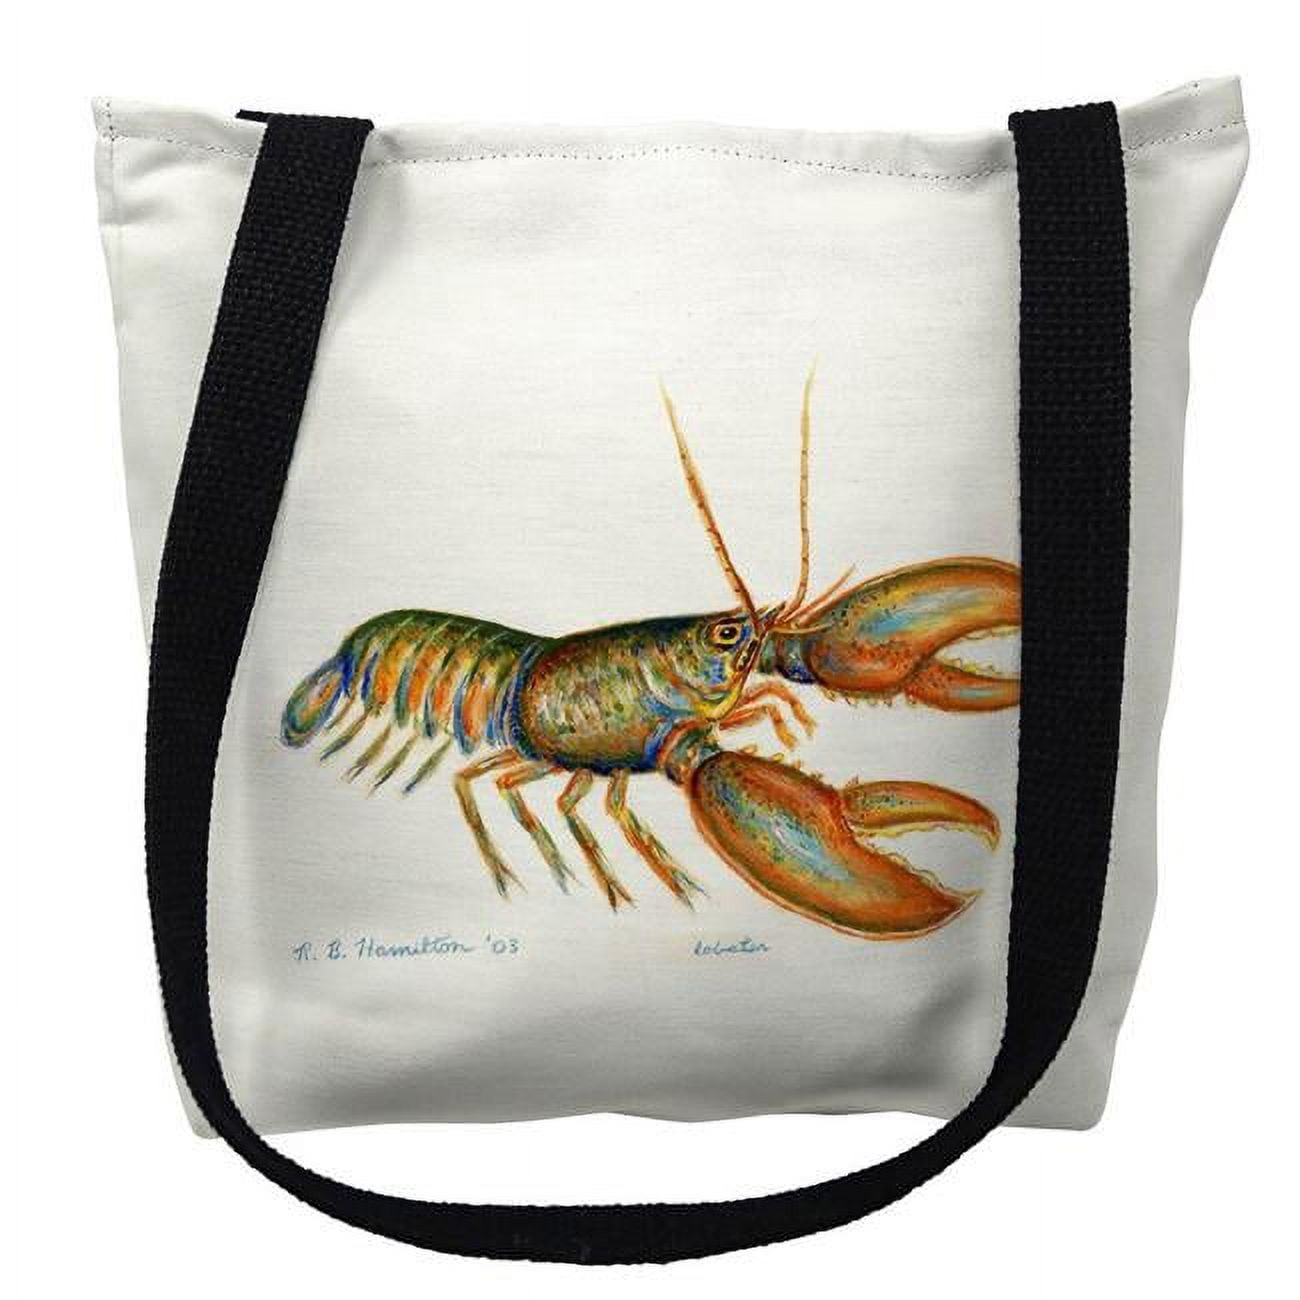 Ty081m 16 X 16 In. Lobster Tote Bag - Medium